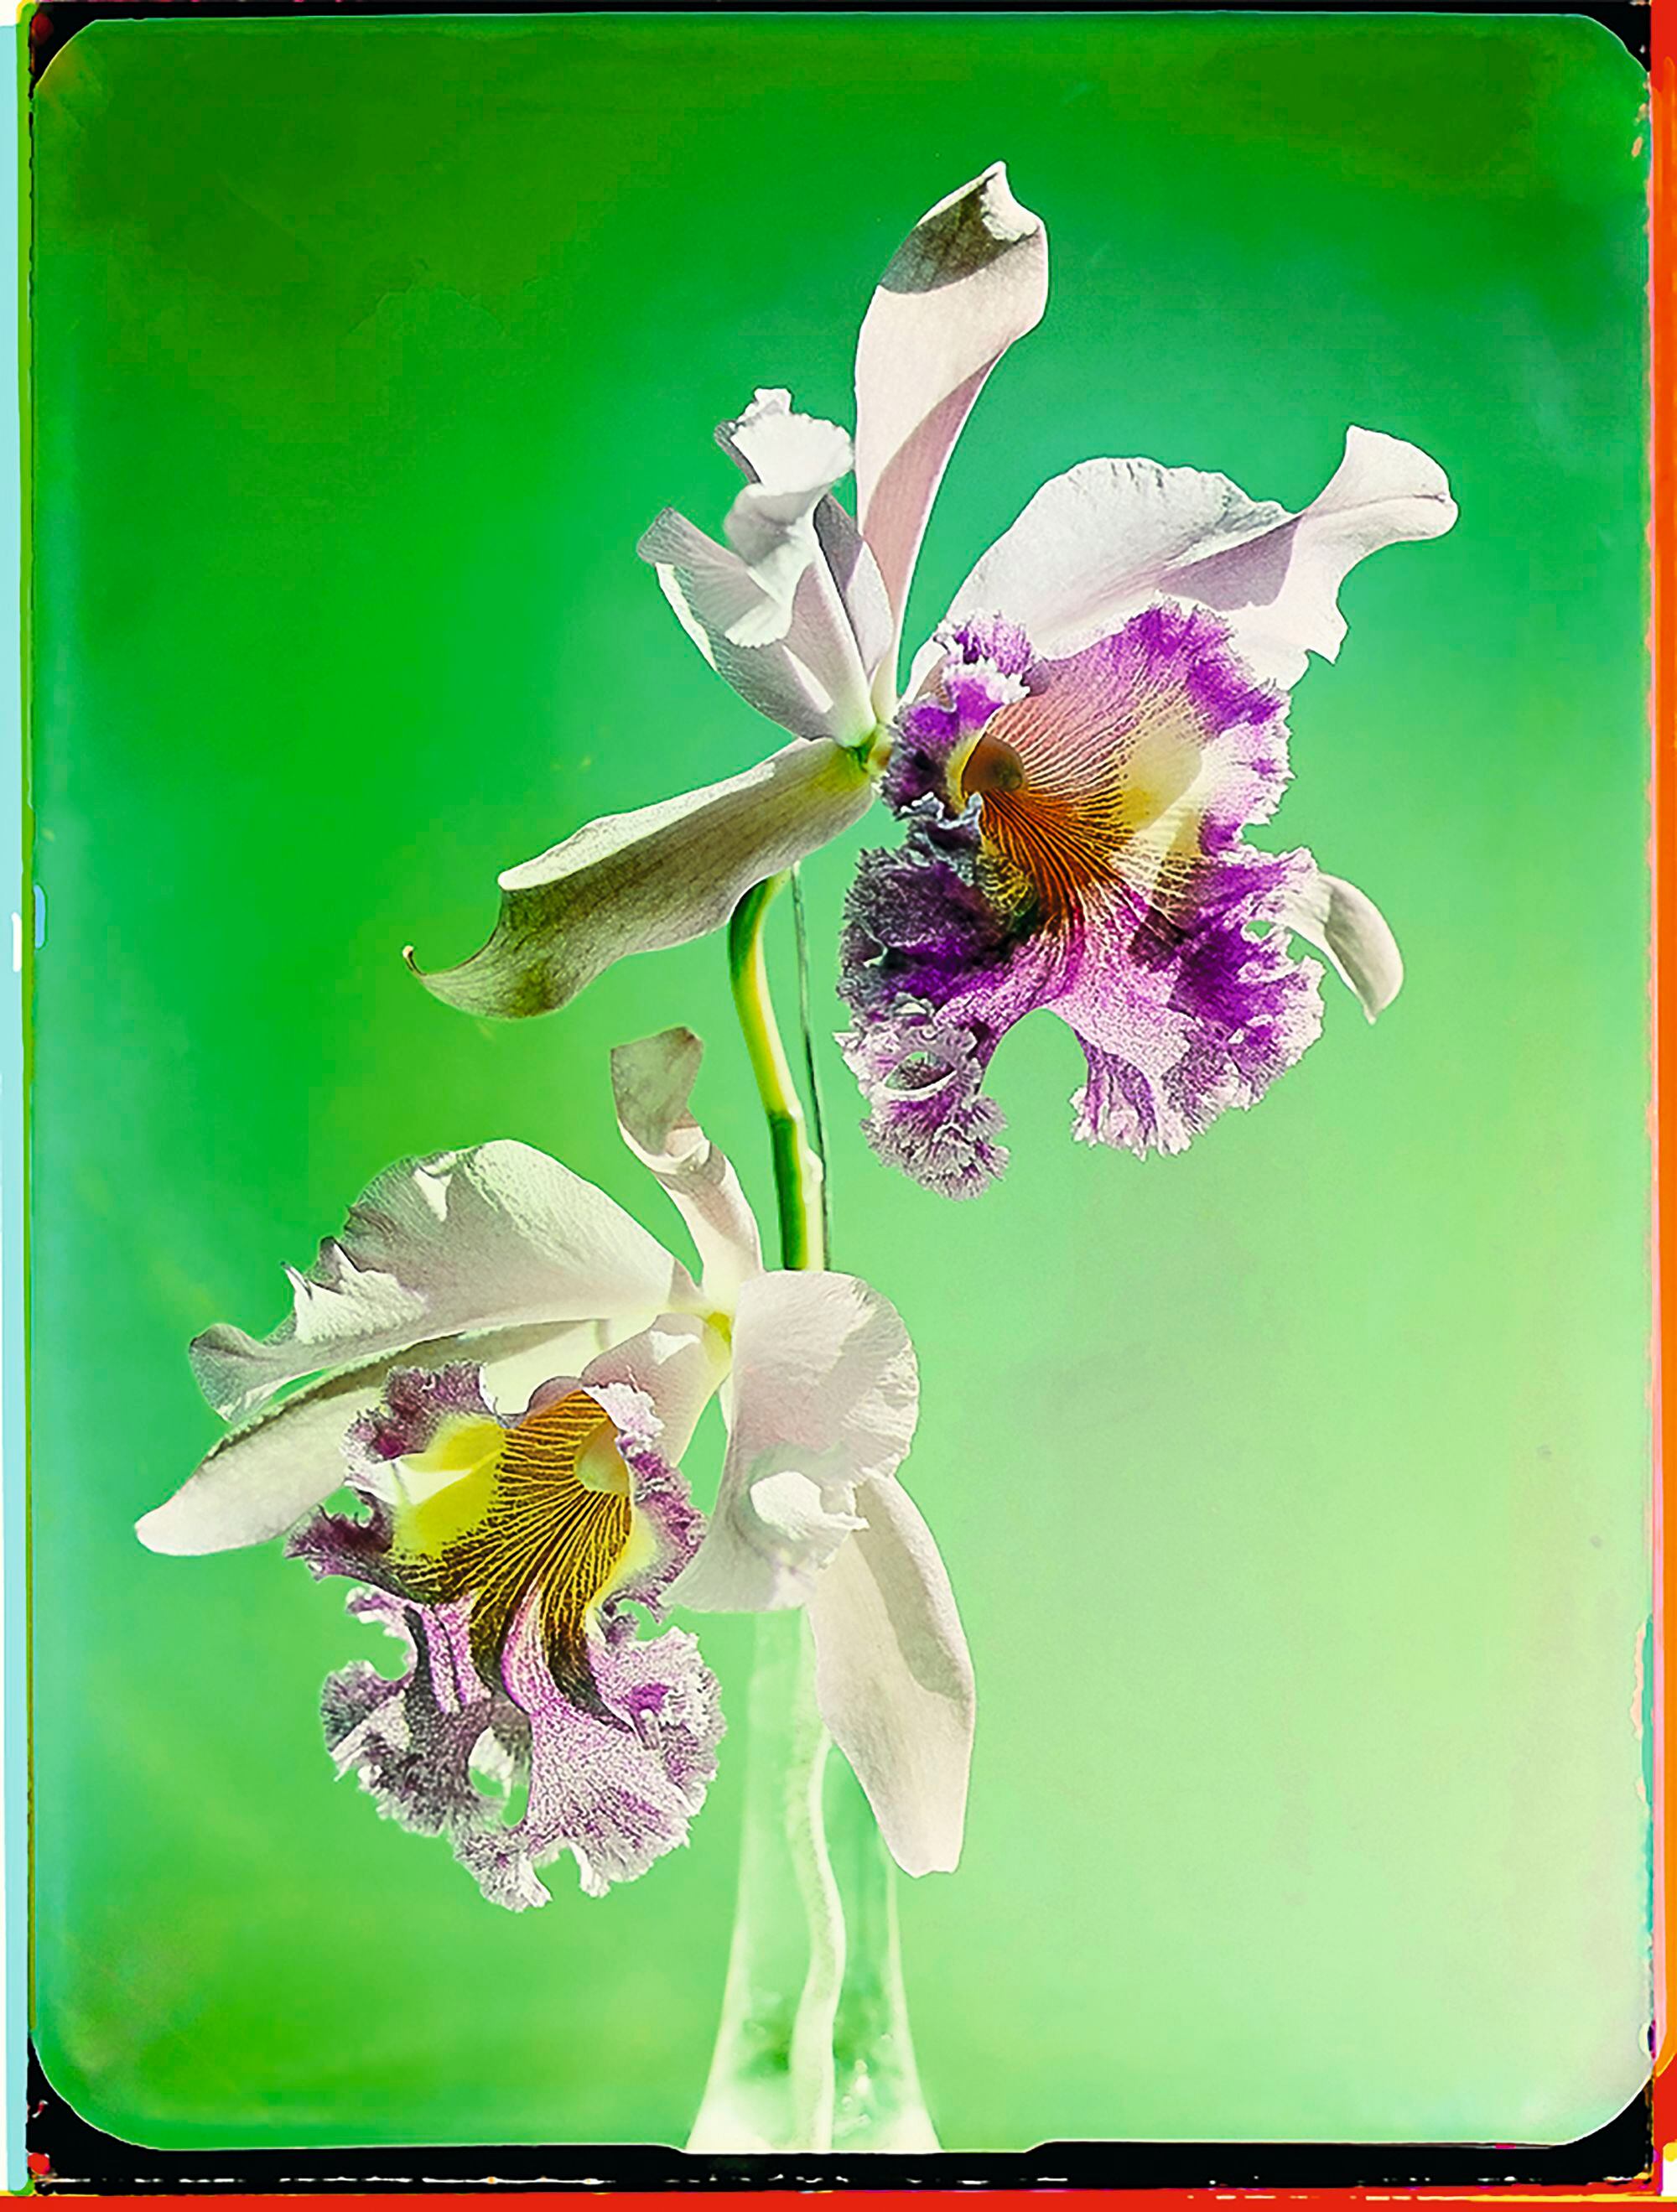 Estudio de orquídeas. Zúrich, 1943.